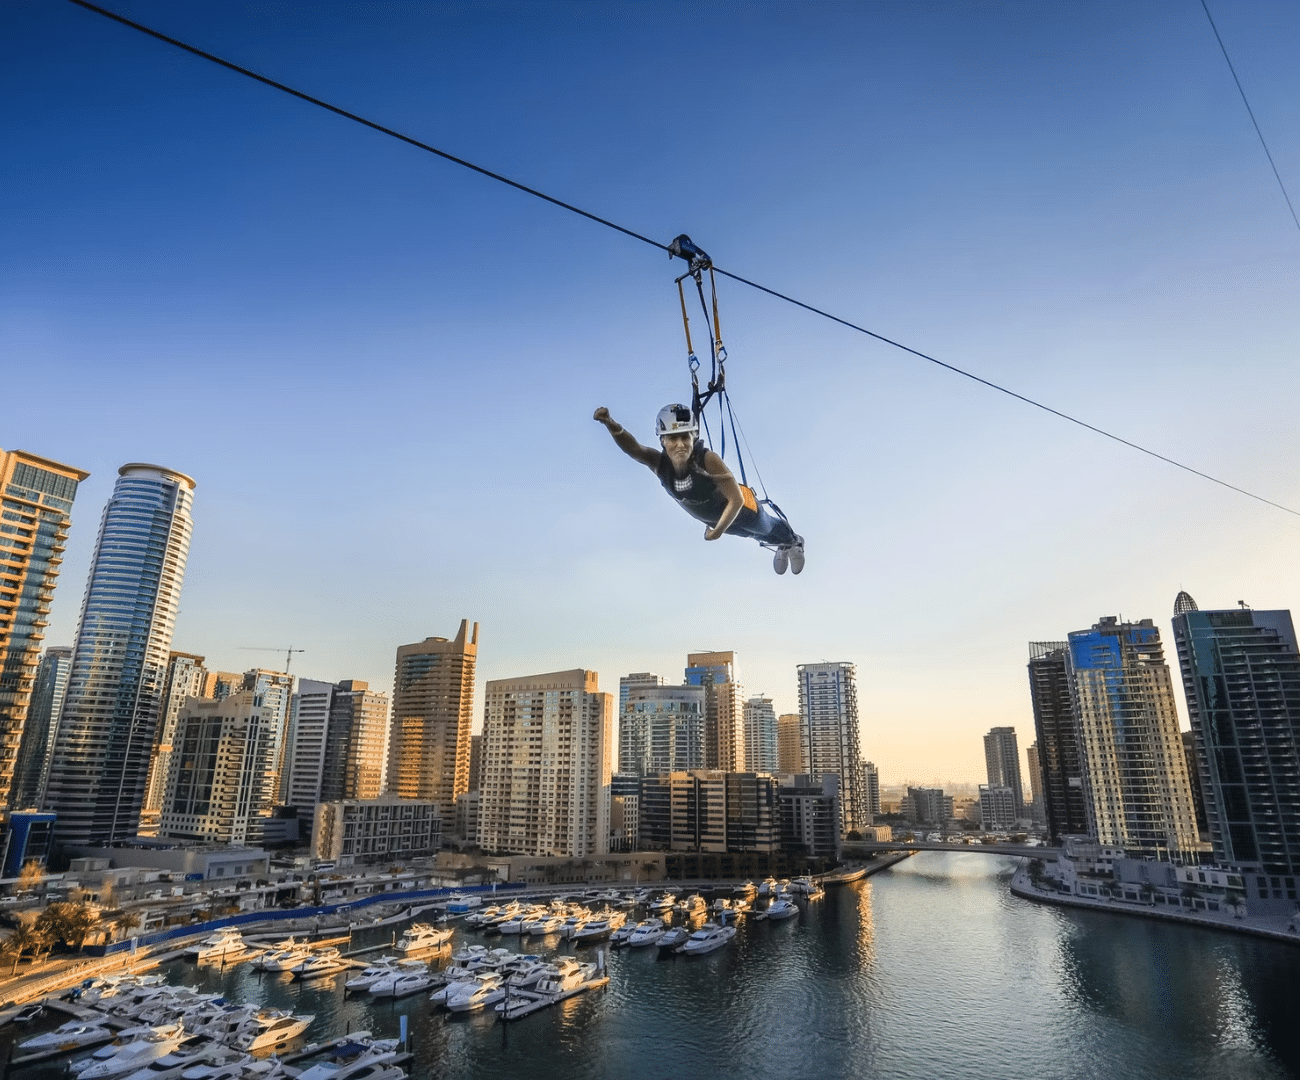 Xline Zipline on a Dubai trip